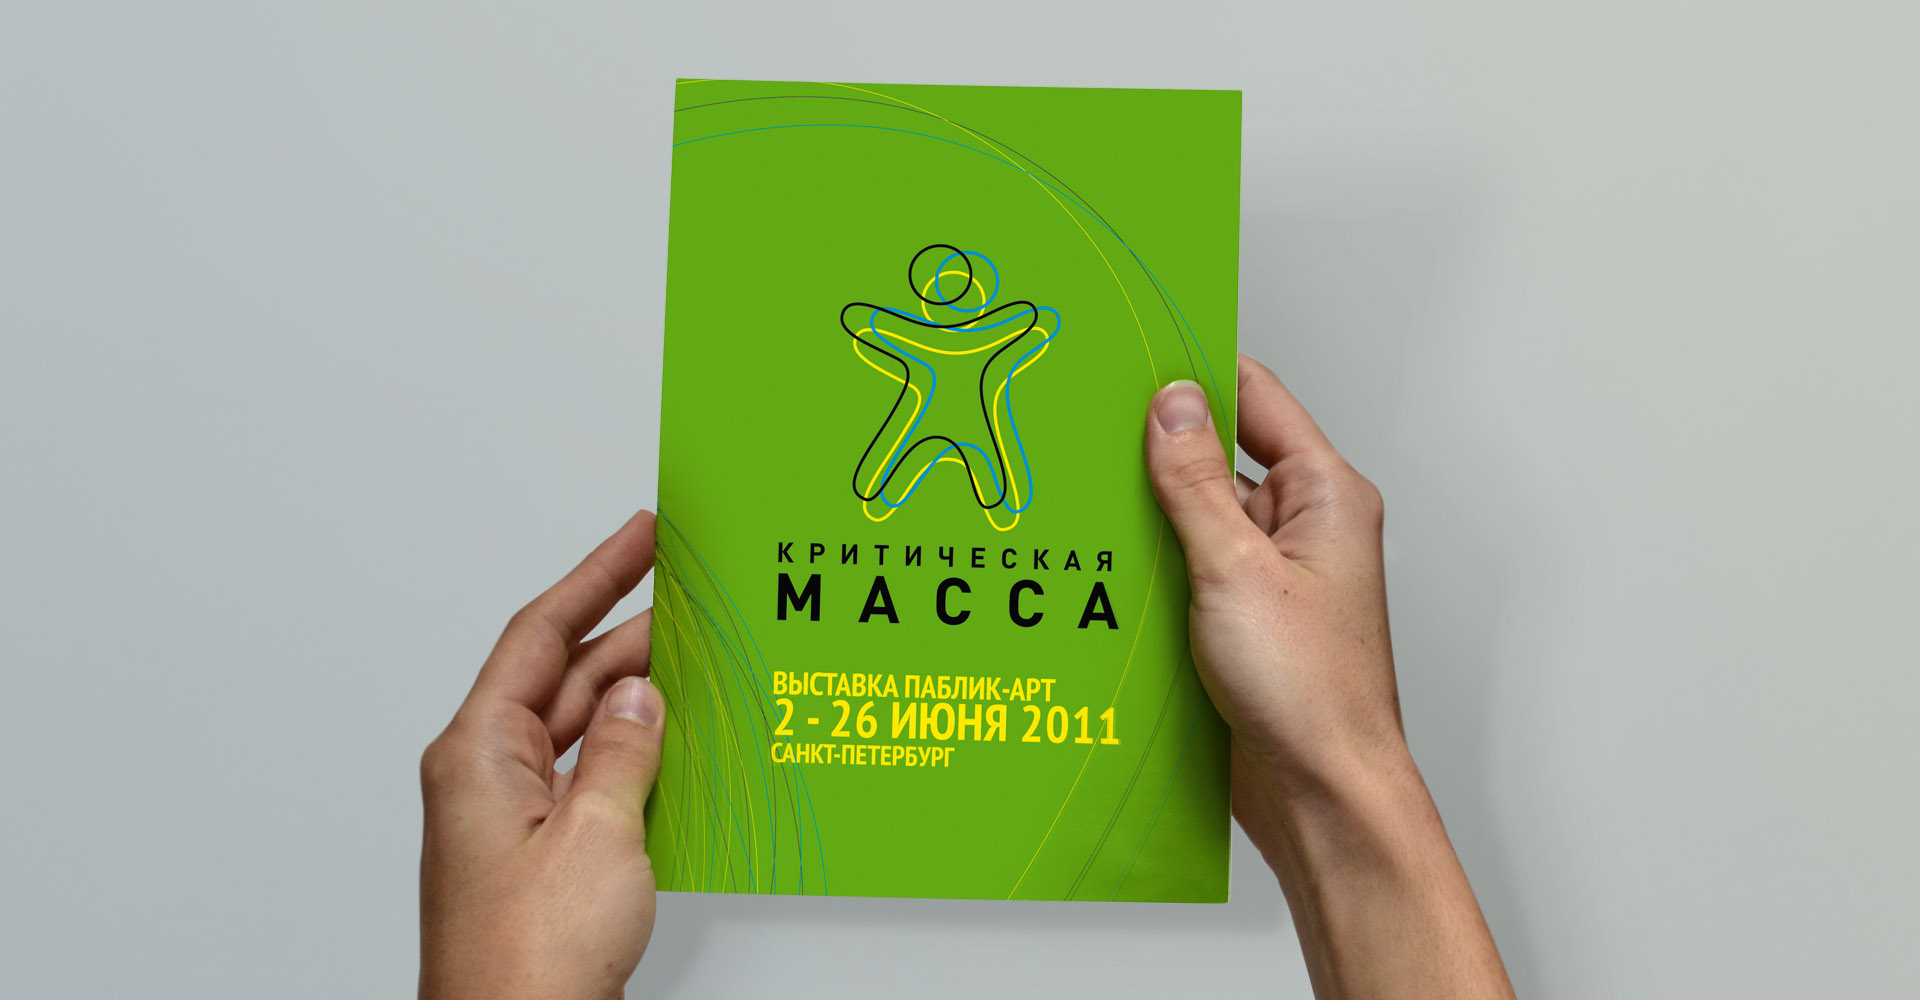 Буклет проекта "Критическая масса 2011"